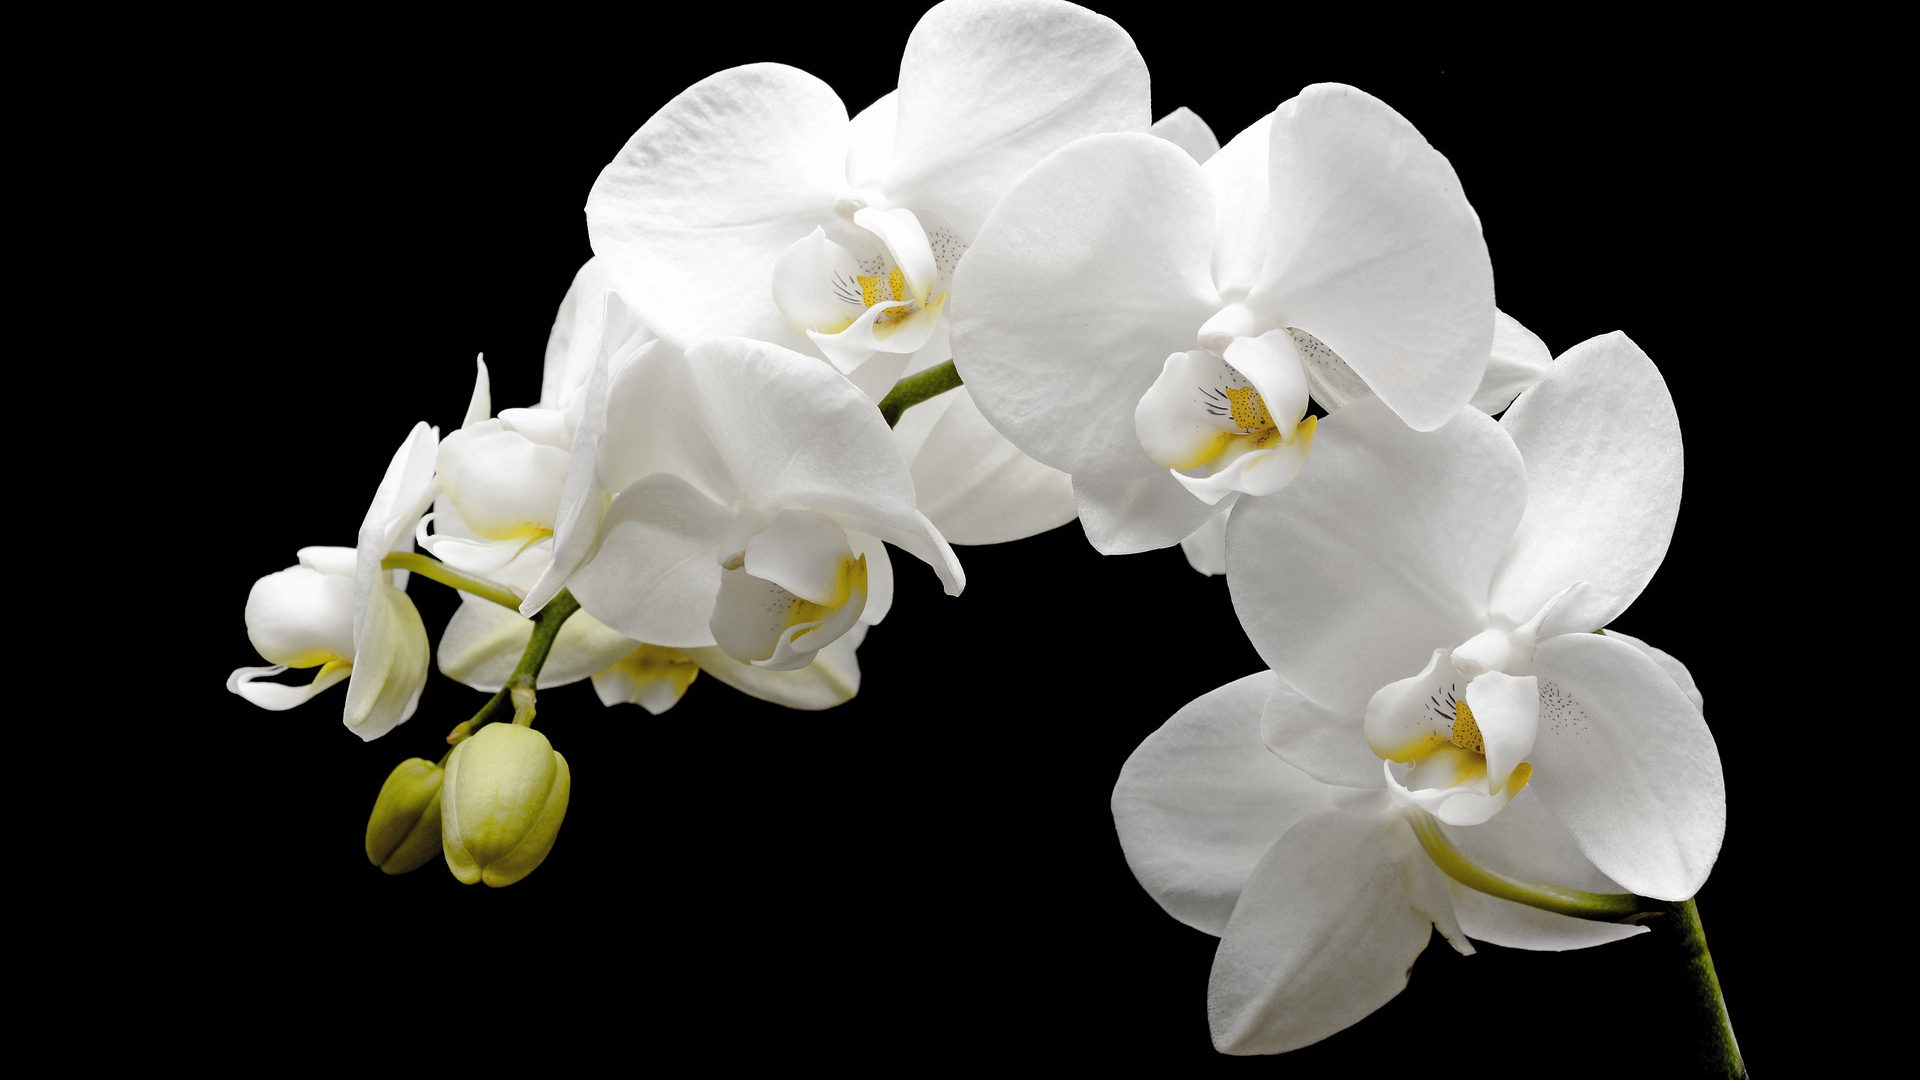 Белая Орхидея на голубом фоне